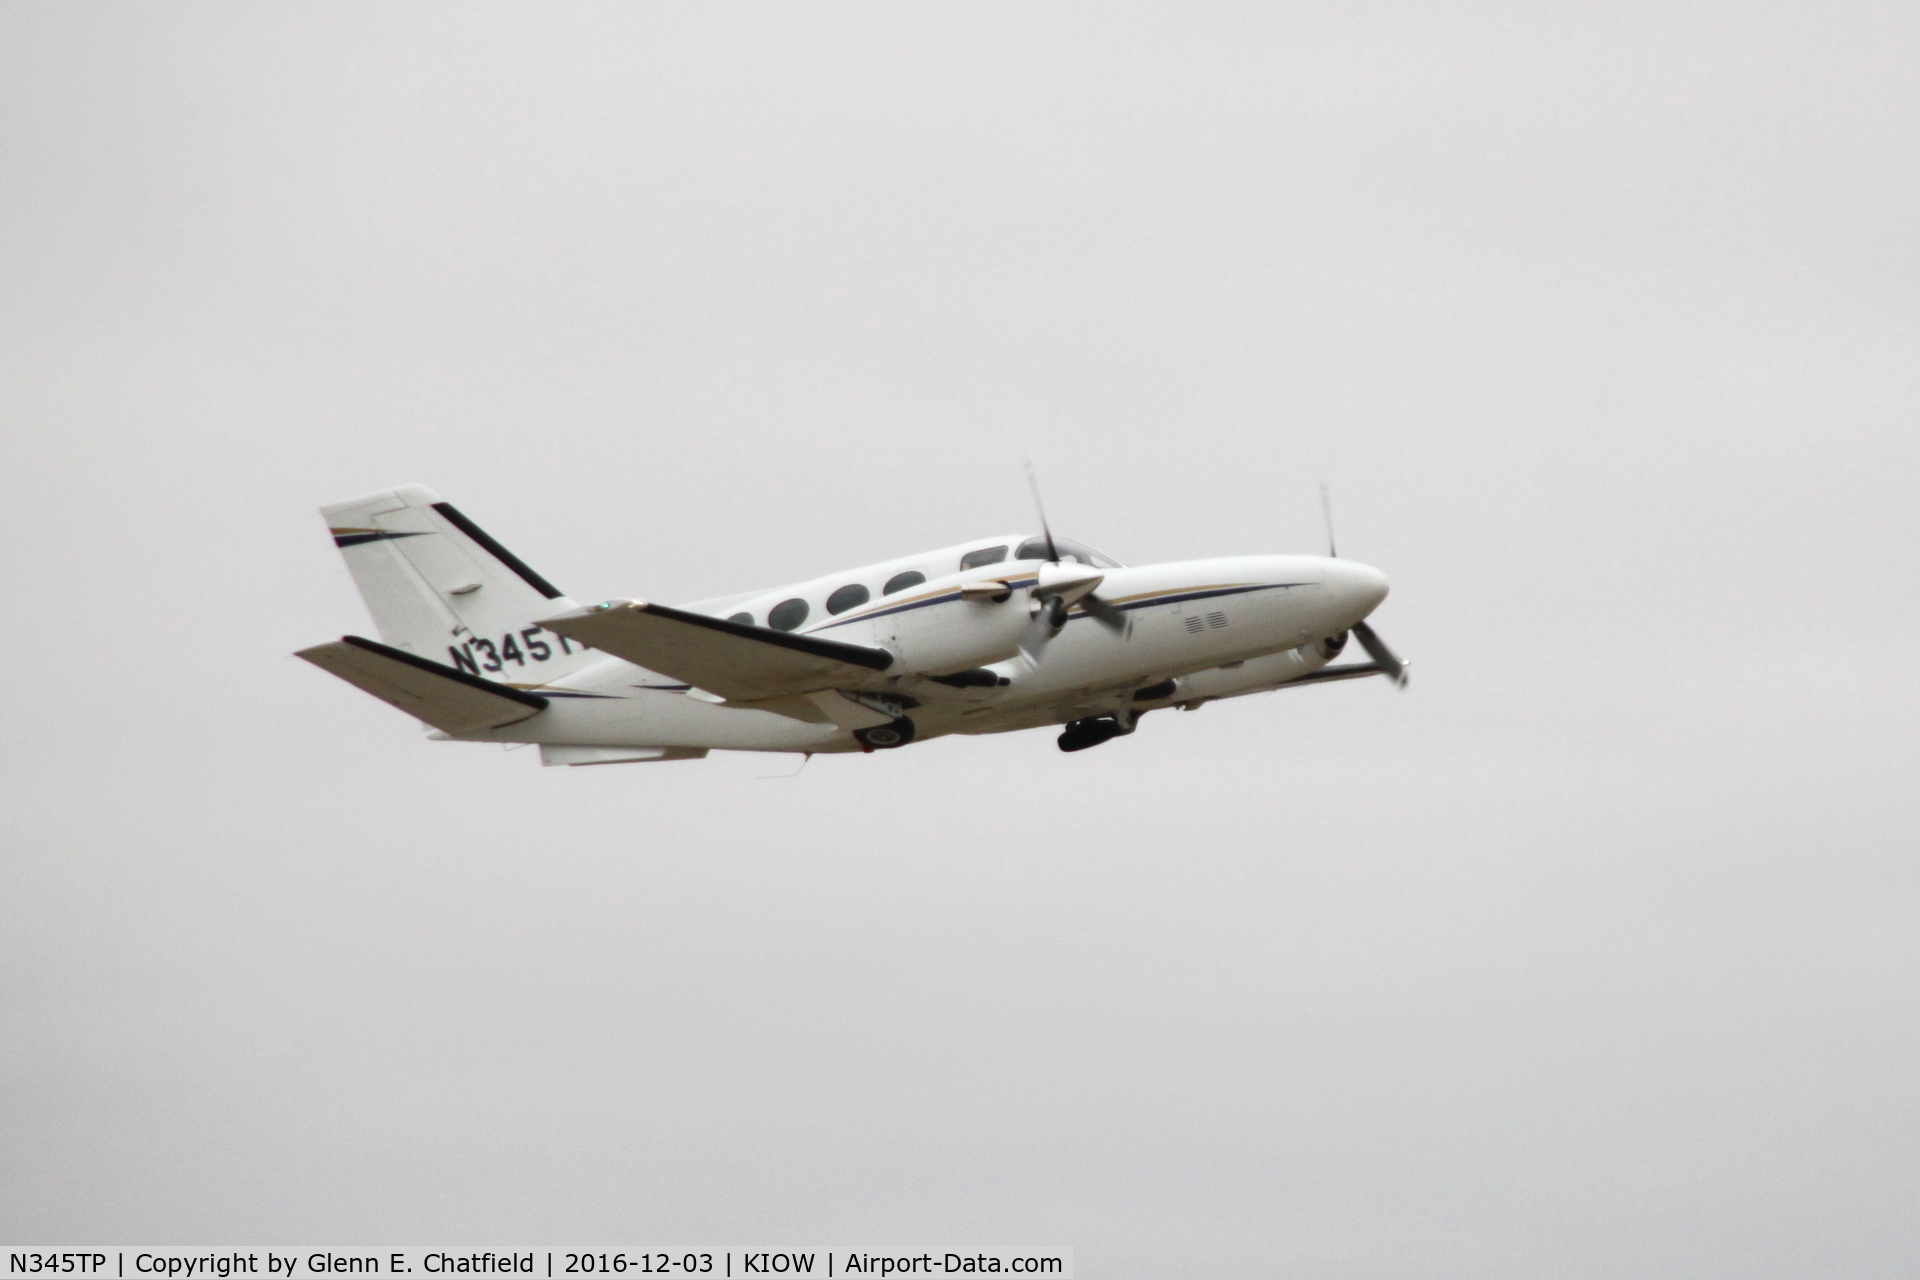 N345TP, Cessna 425 Corsair C/N 425-0005, Departing Runway 7